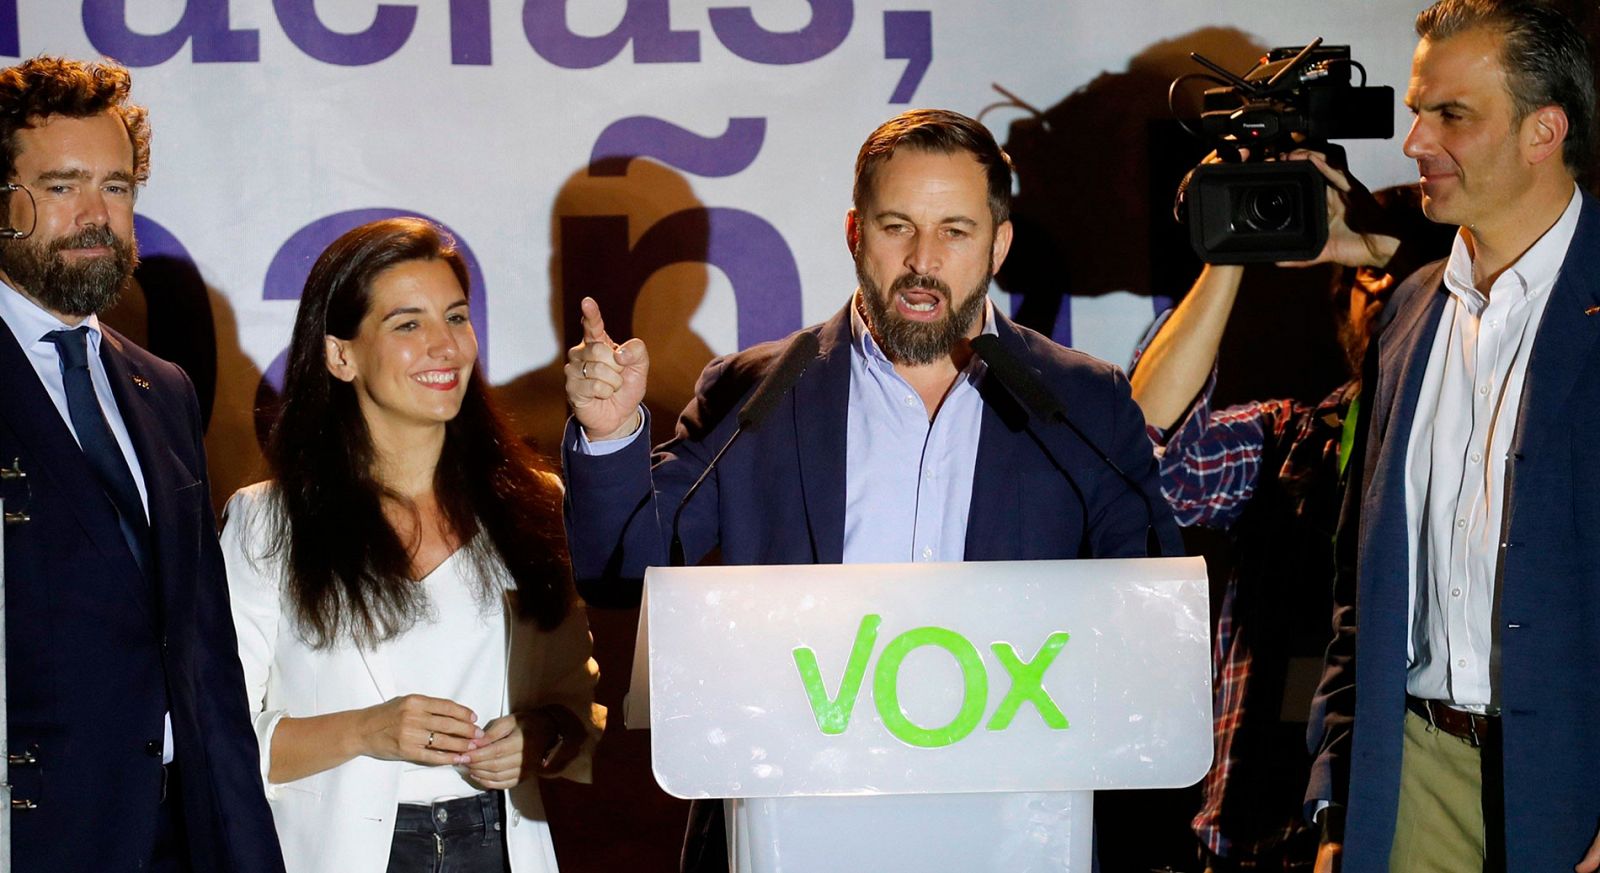 El líder y candidato a la Moncloa de Vox, Santiago Abascal, ha valorado en clave triunfalista los resultados de su partido en las Elecciones Generales 2019, en las que ha obtenido 24 diputados."Os dijimos que iniciabamos una reconquista y eso es lo q